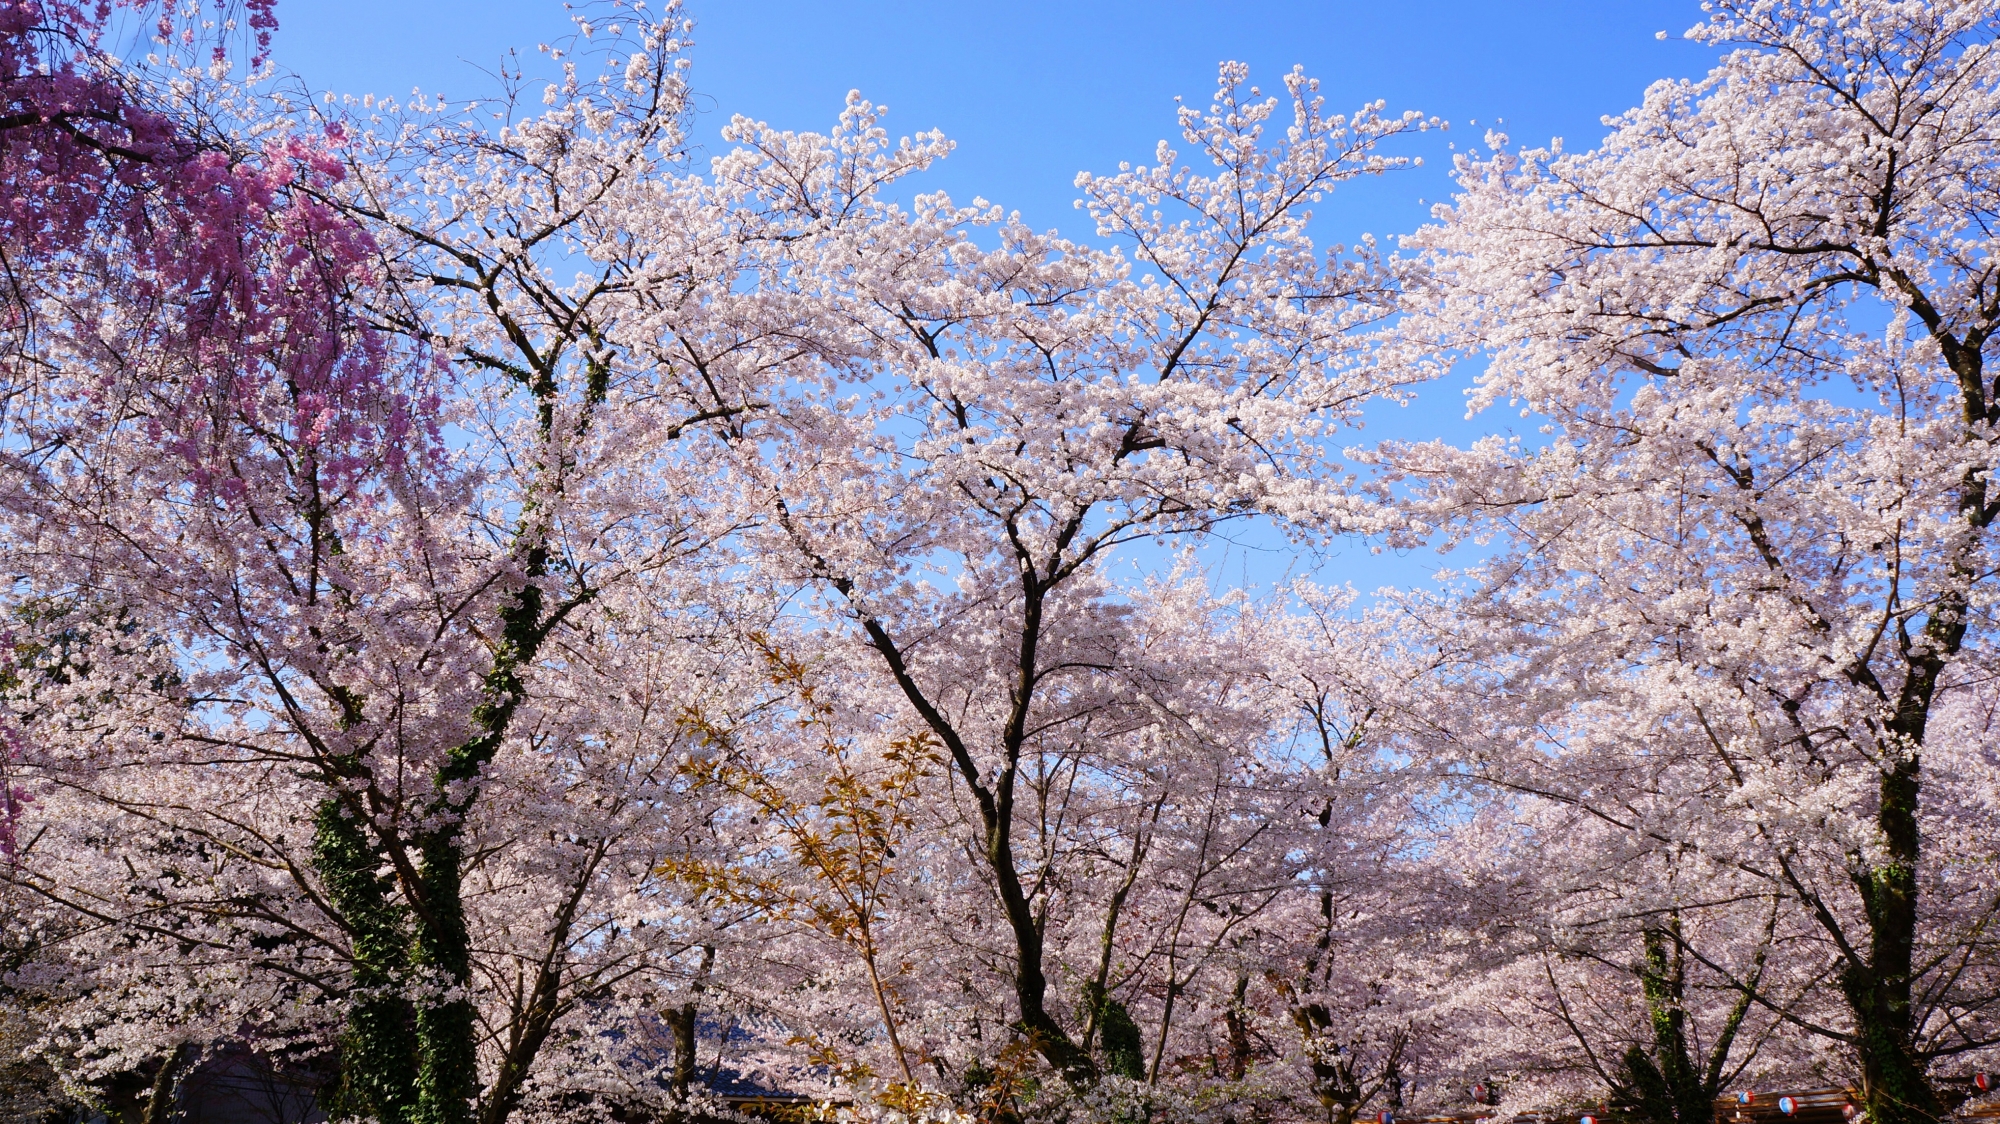 「桜の神社」や「桜の平野神社」など言われる平野神社